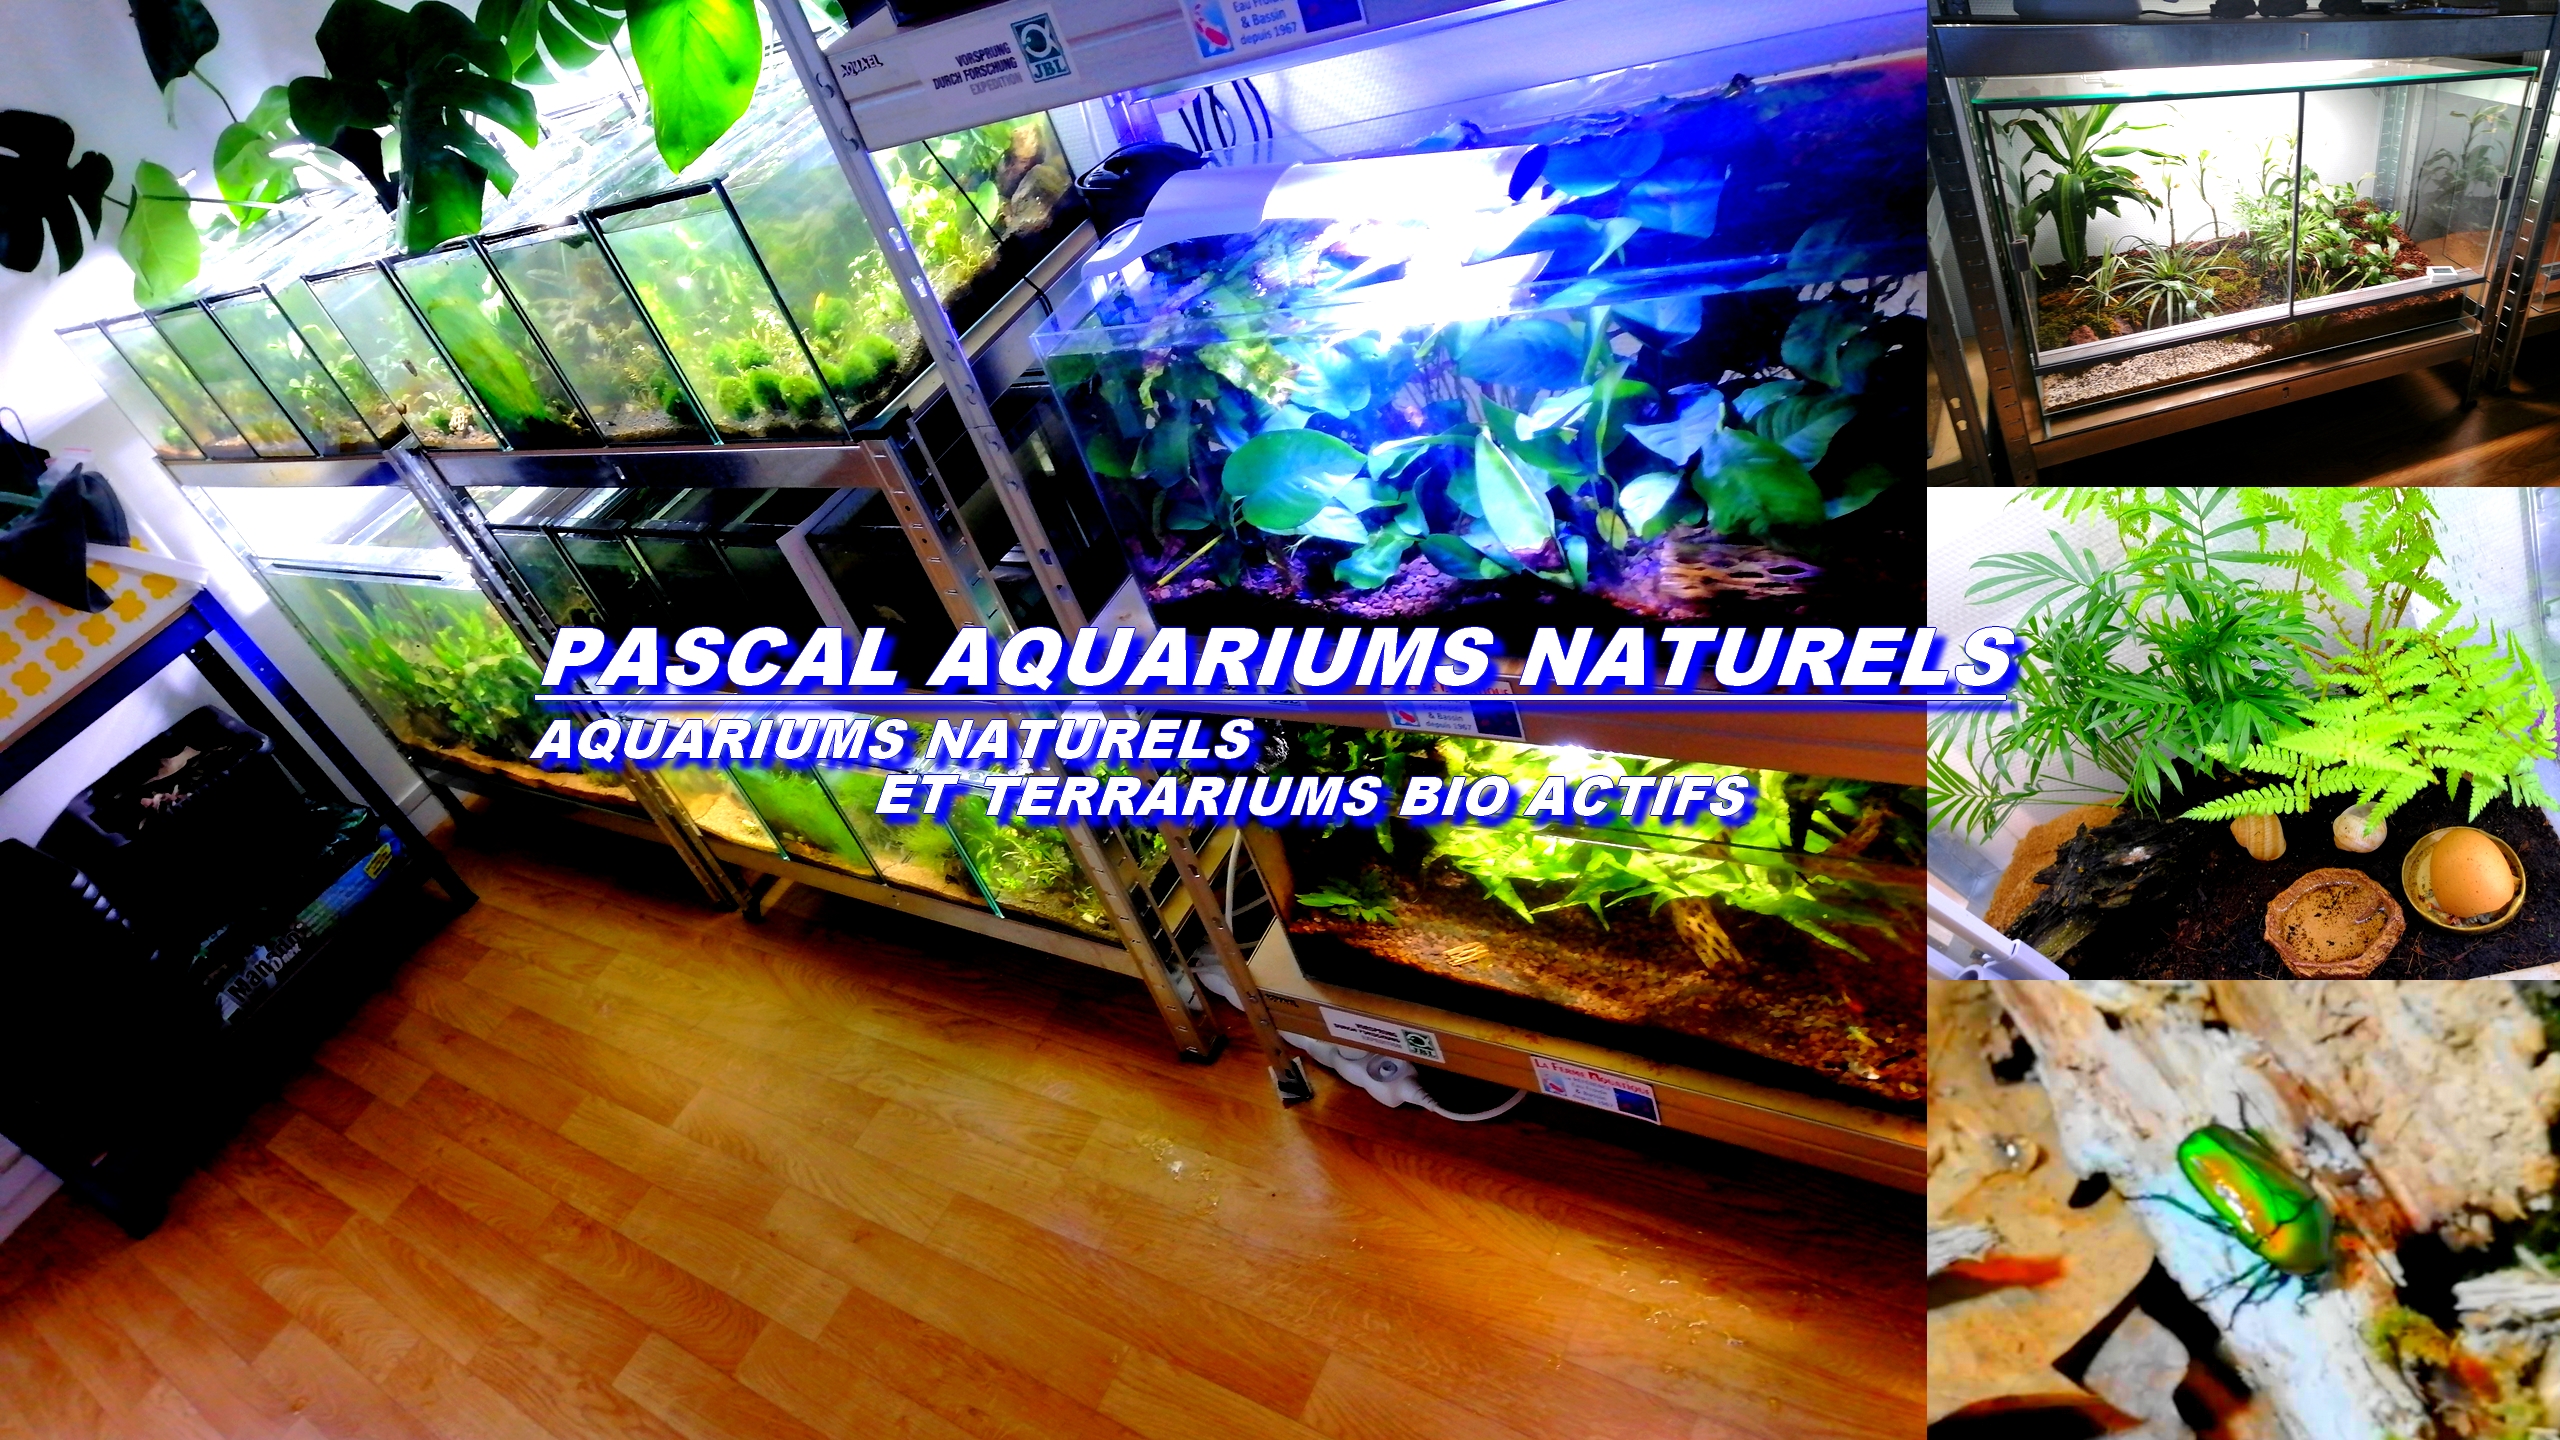 Pascal Aquarium Naturels